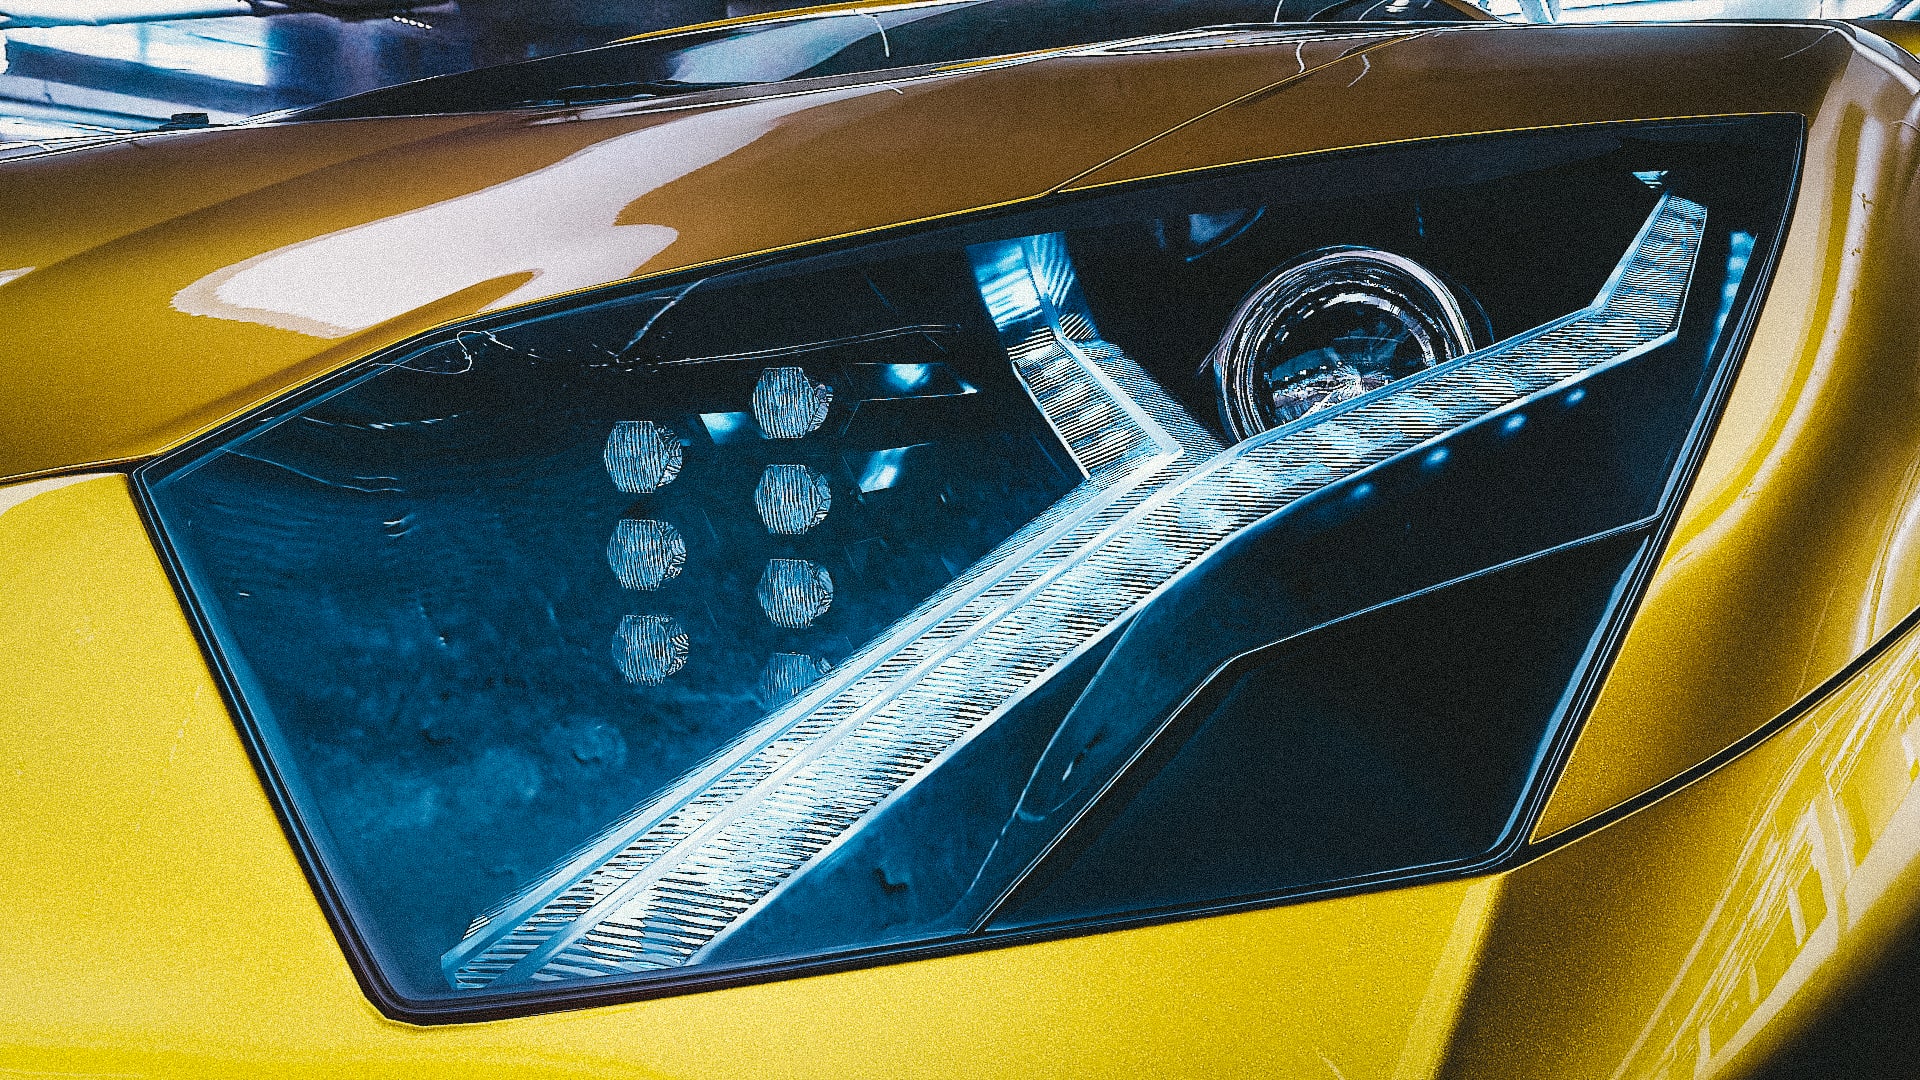 Lamborghini Aventador в Blender cycles render изображение